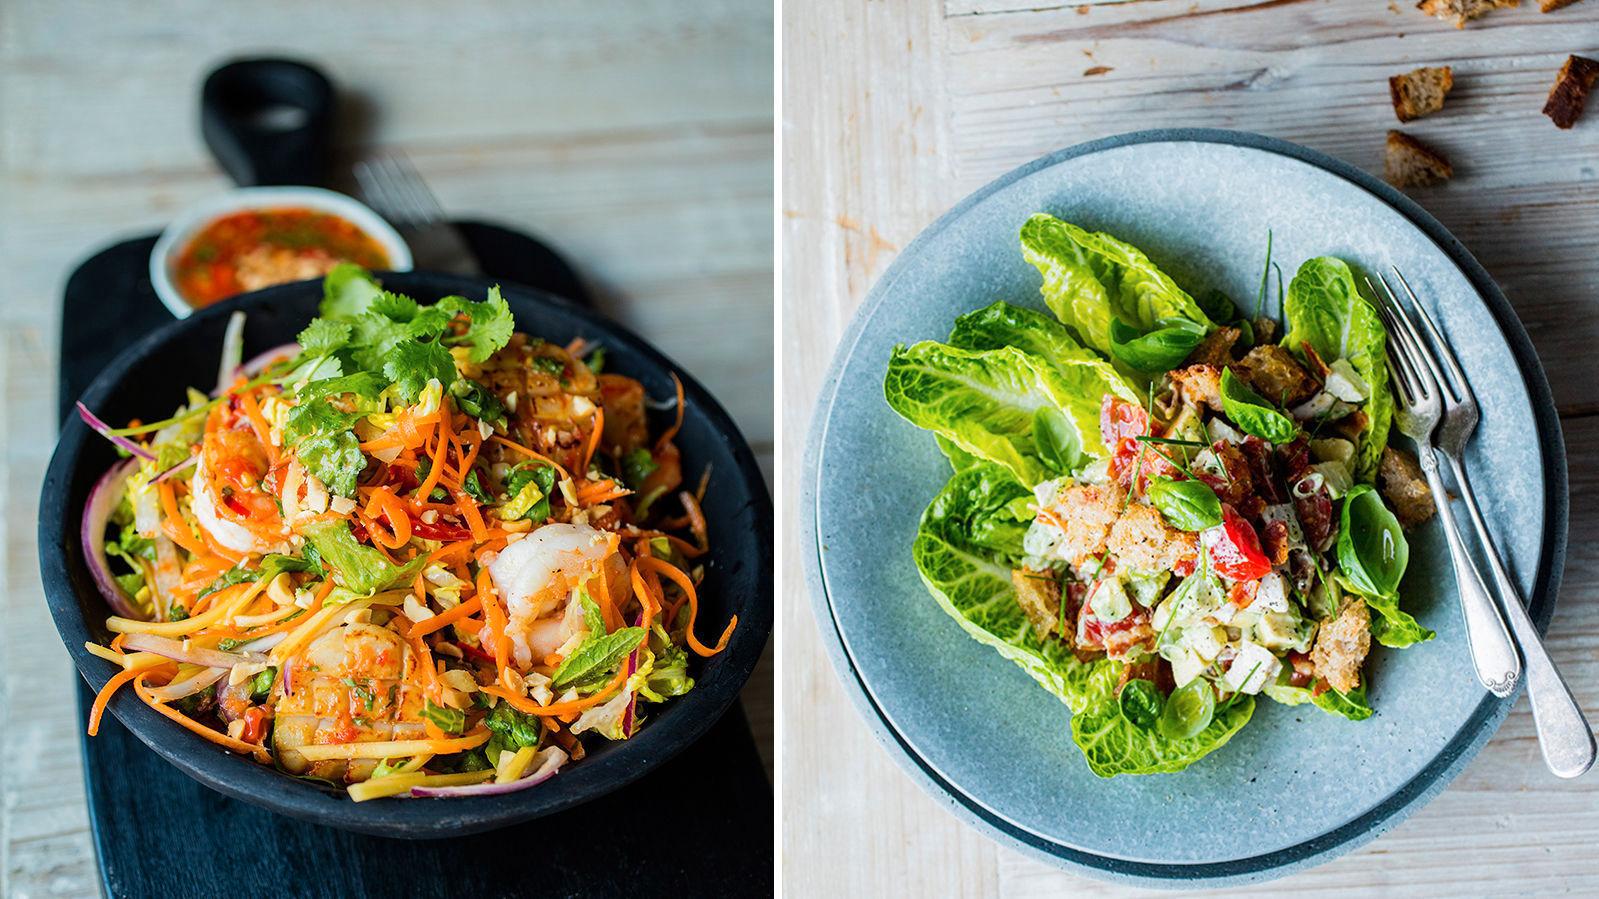 SALATLYKKE: Det er god mat i en god salat. Prøv en thai-inspirert en med kamskjell og reker - eller en sandwich-inspirert en med kylling og bacon. Foto: Sara Johannessen/VG.